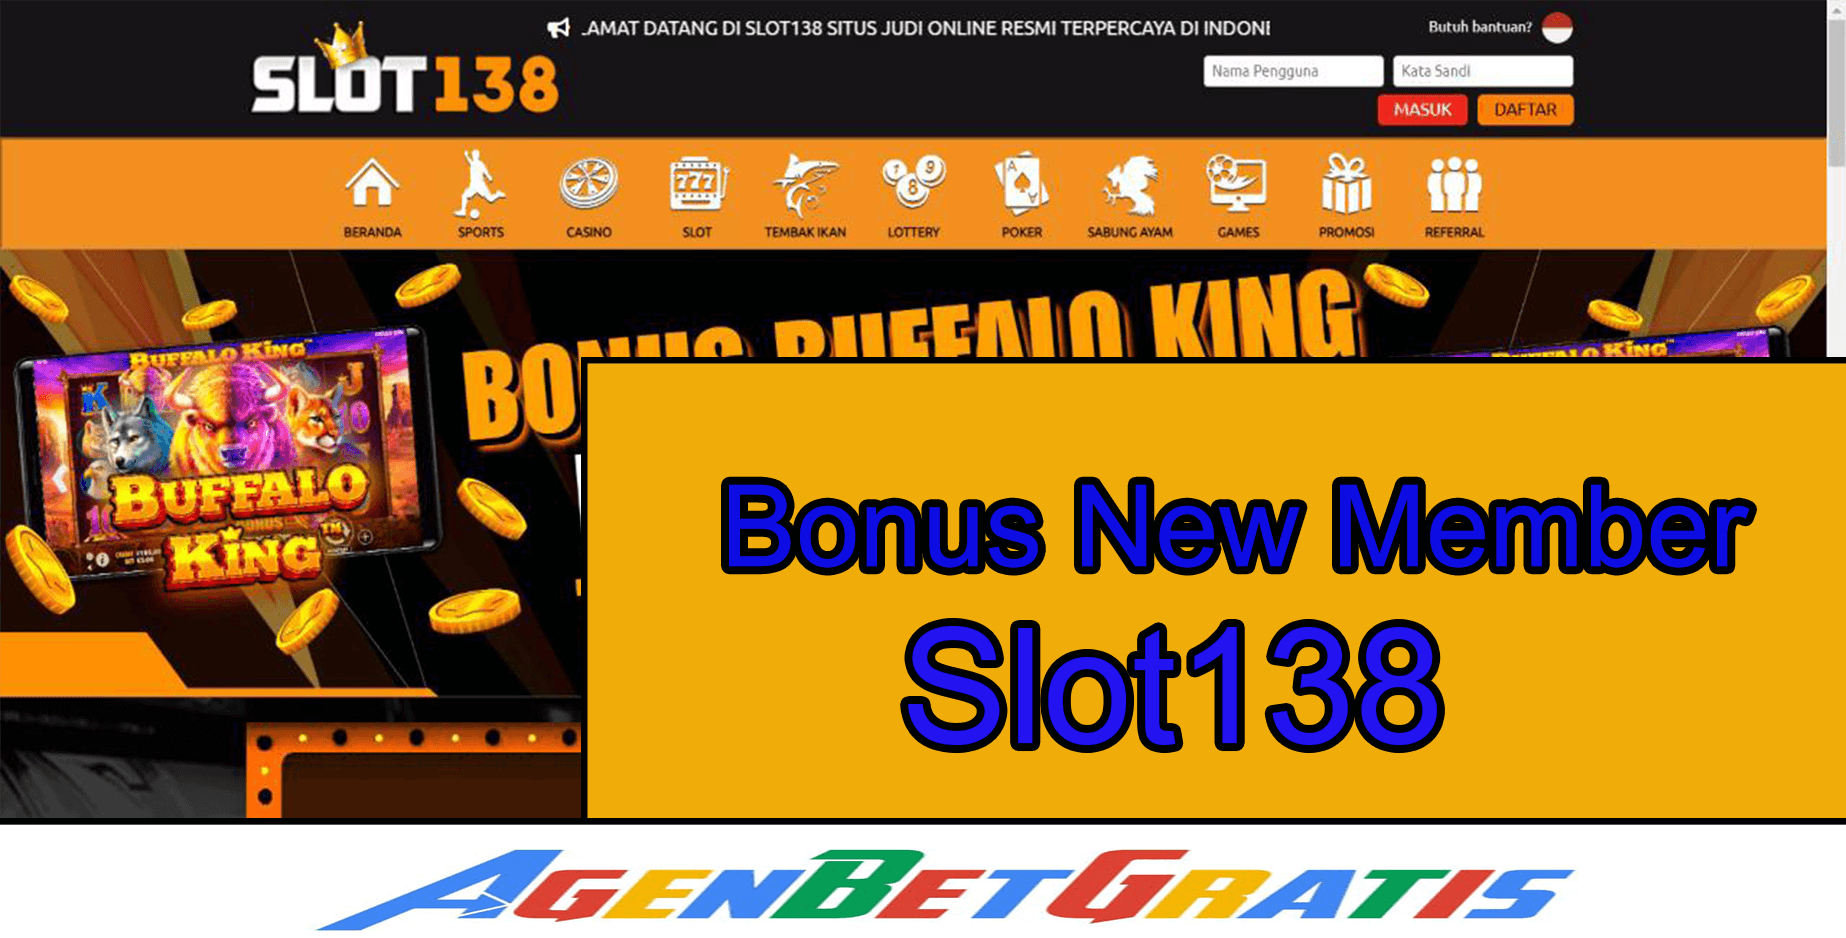 SLOT138 - Bonus New Member